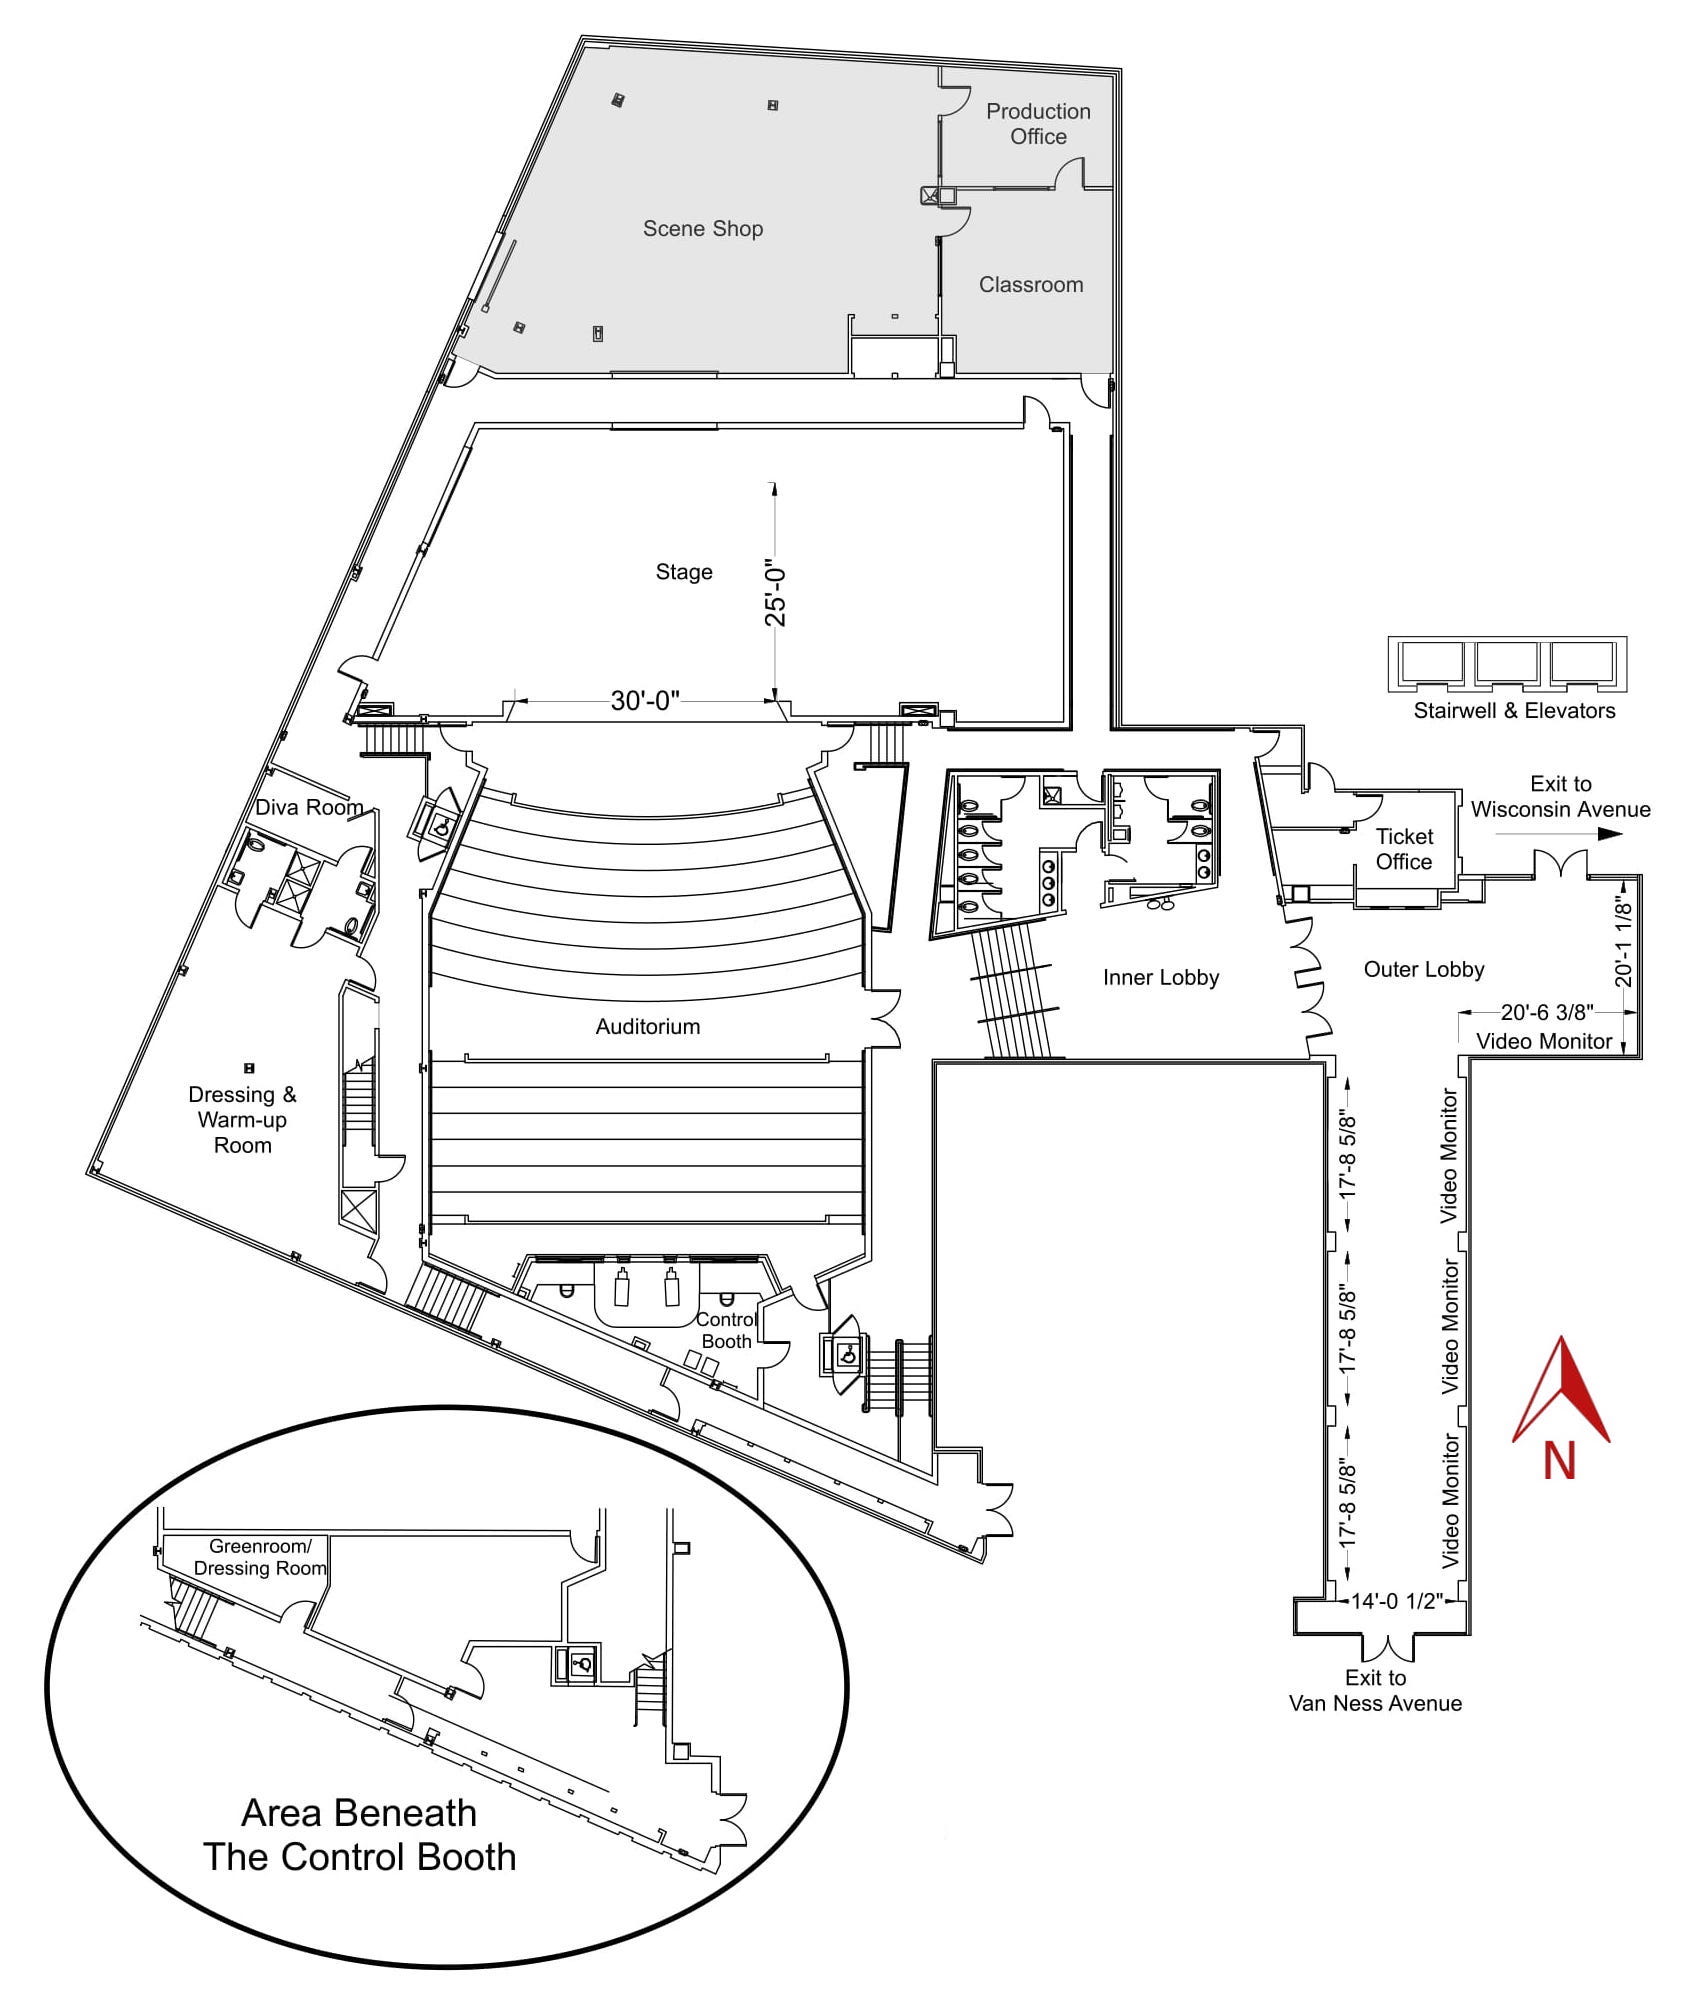 Greenberg Theatre ground plan. Specification details below